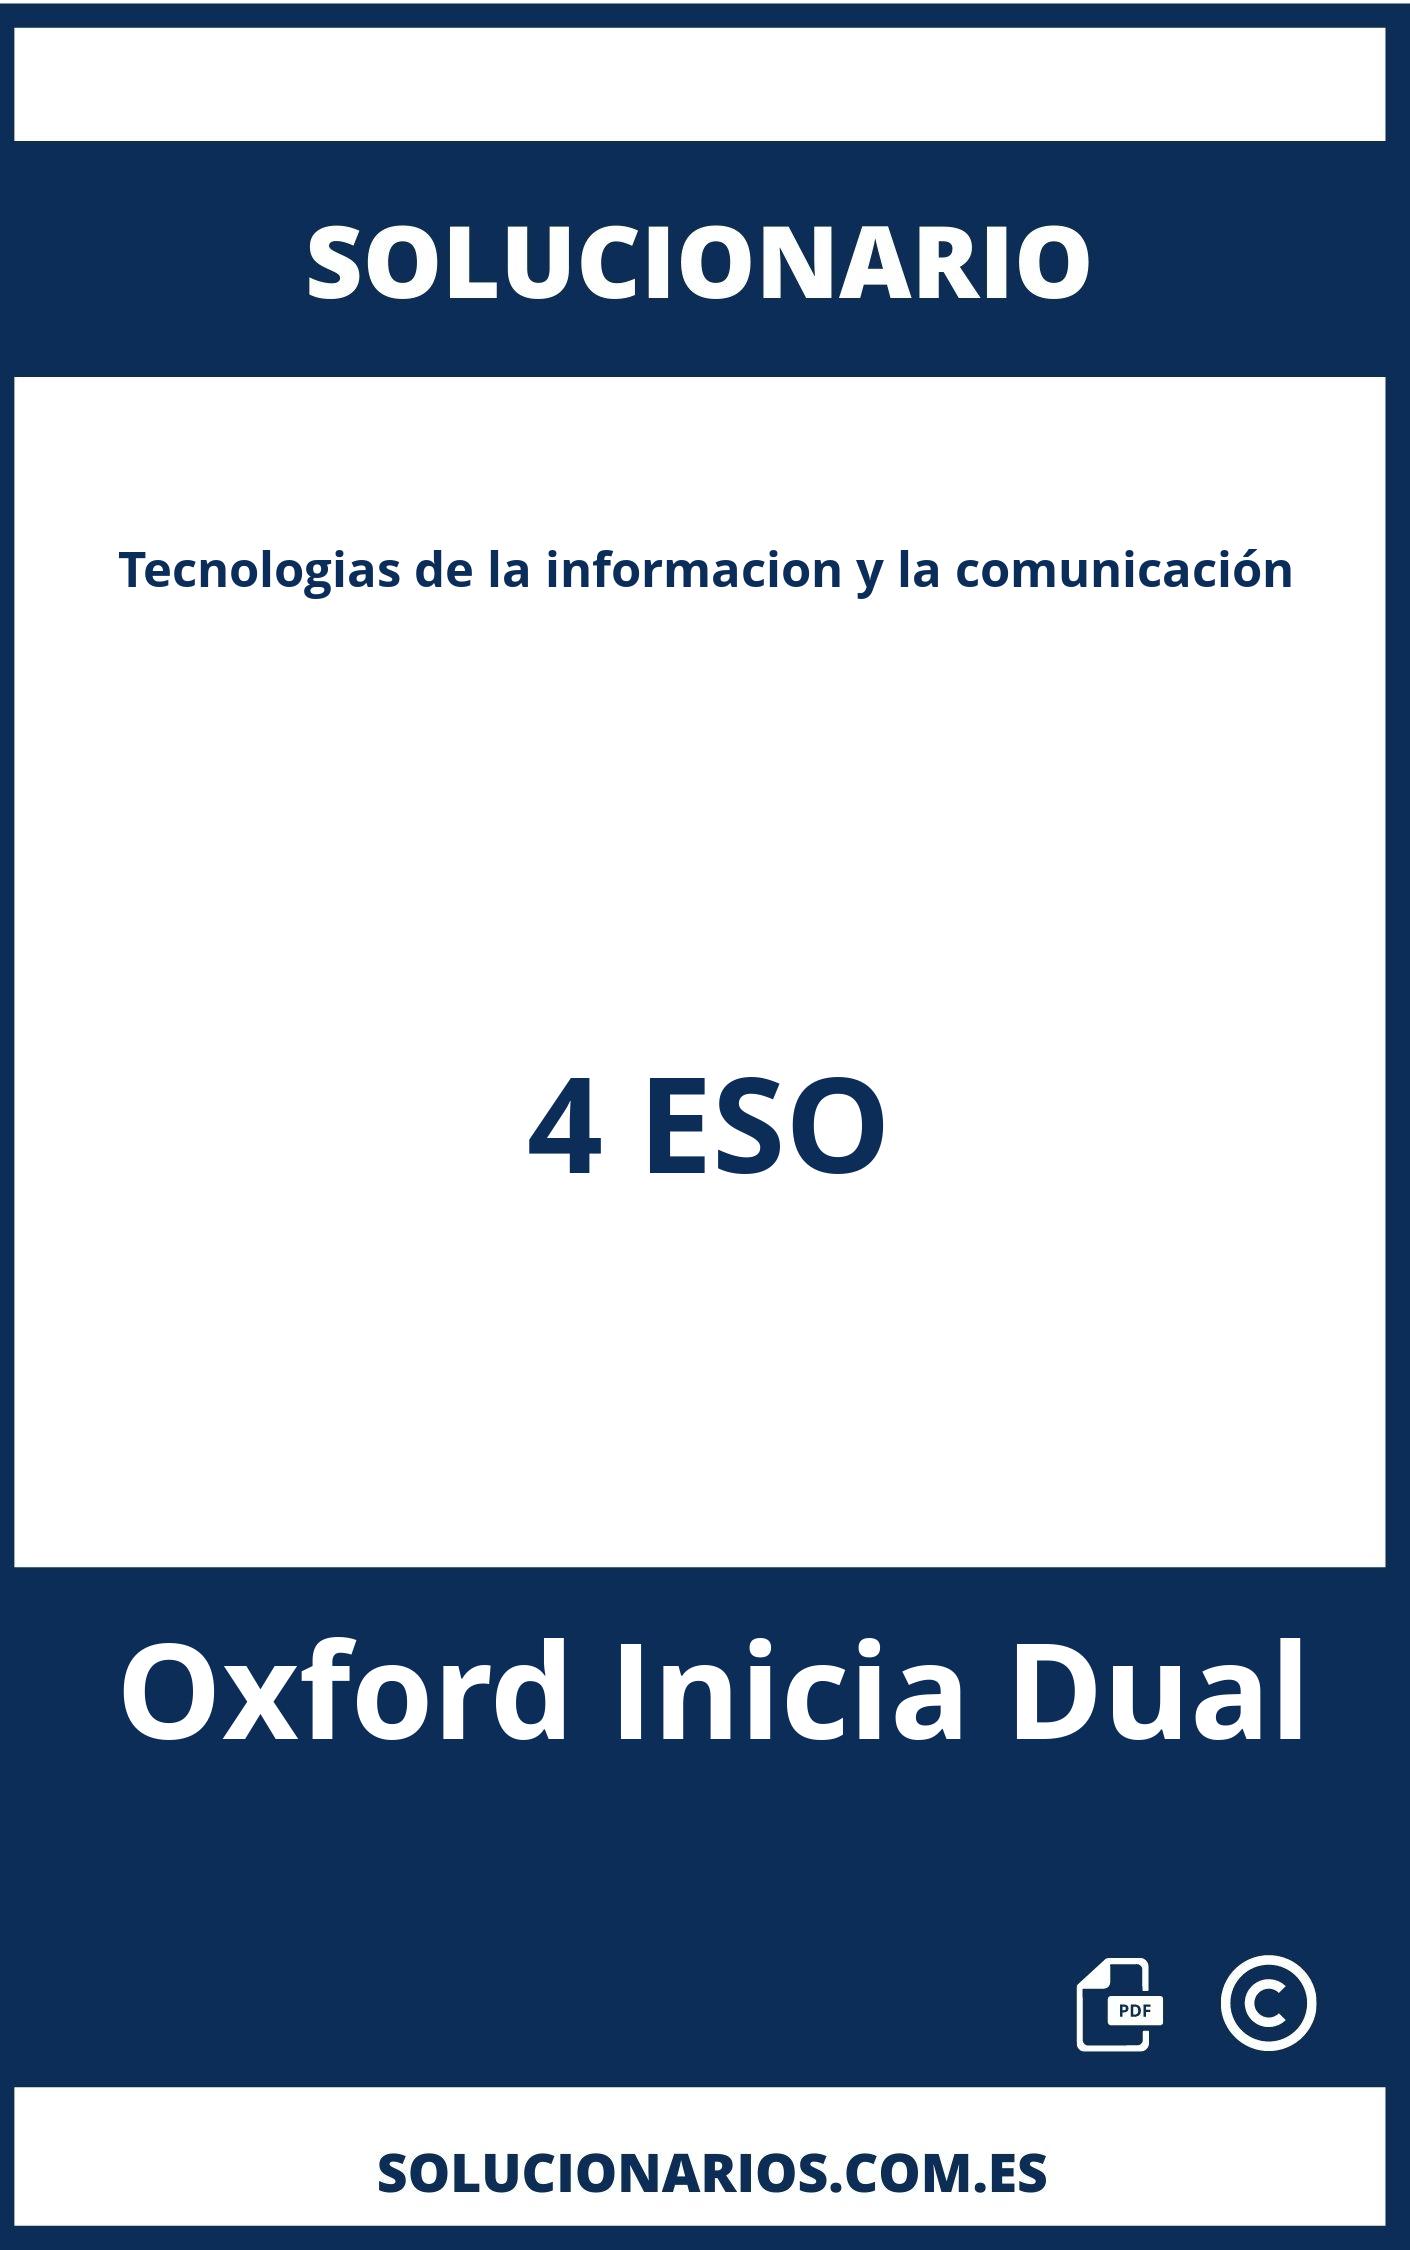 Solucionario Tecnologias de la informacion y la comunicación 4 ESO Oxford Inicia Dual